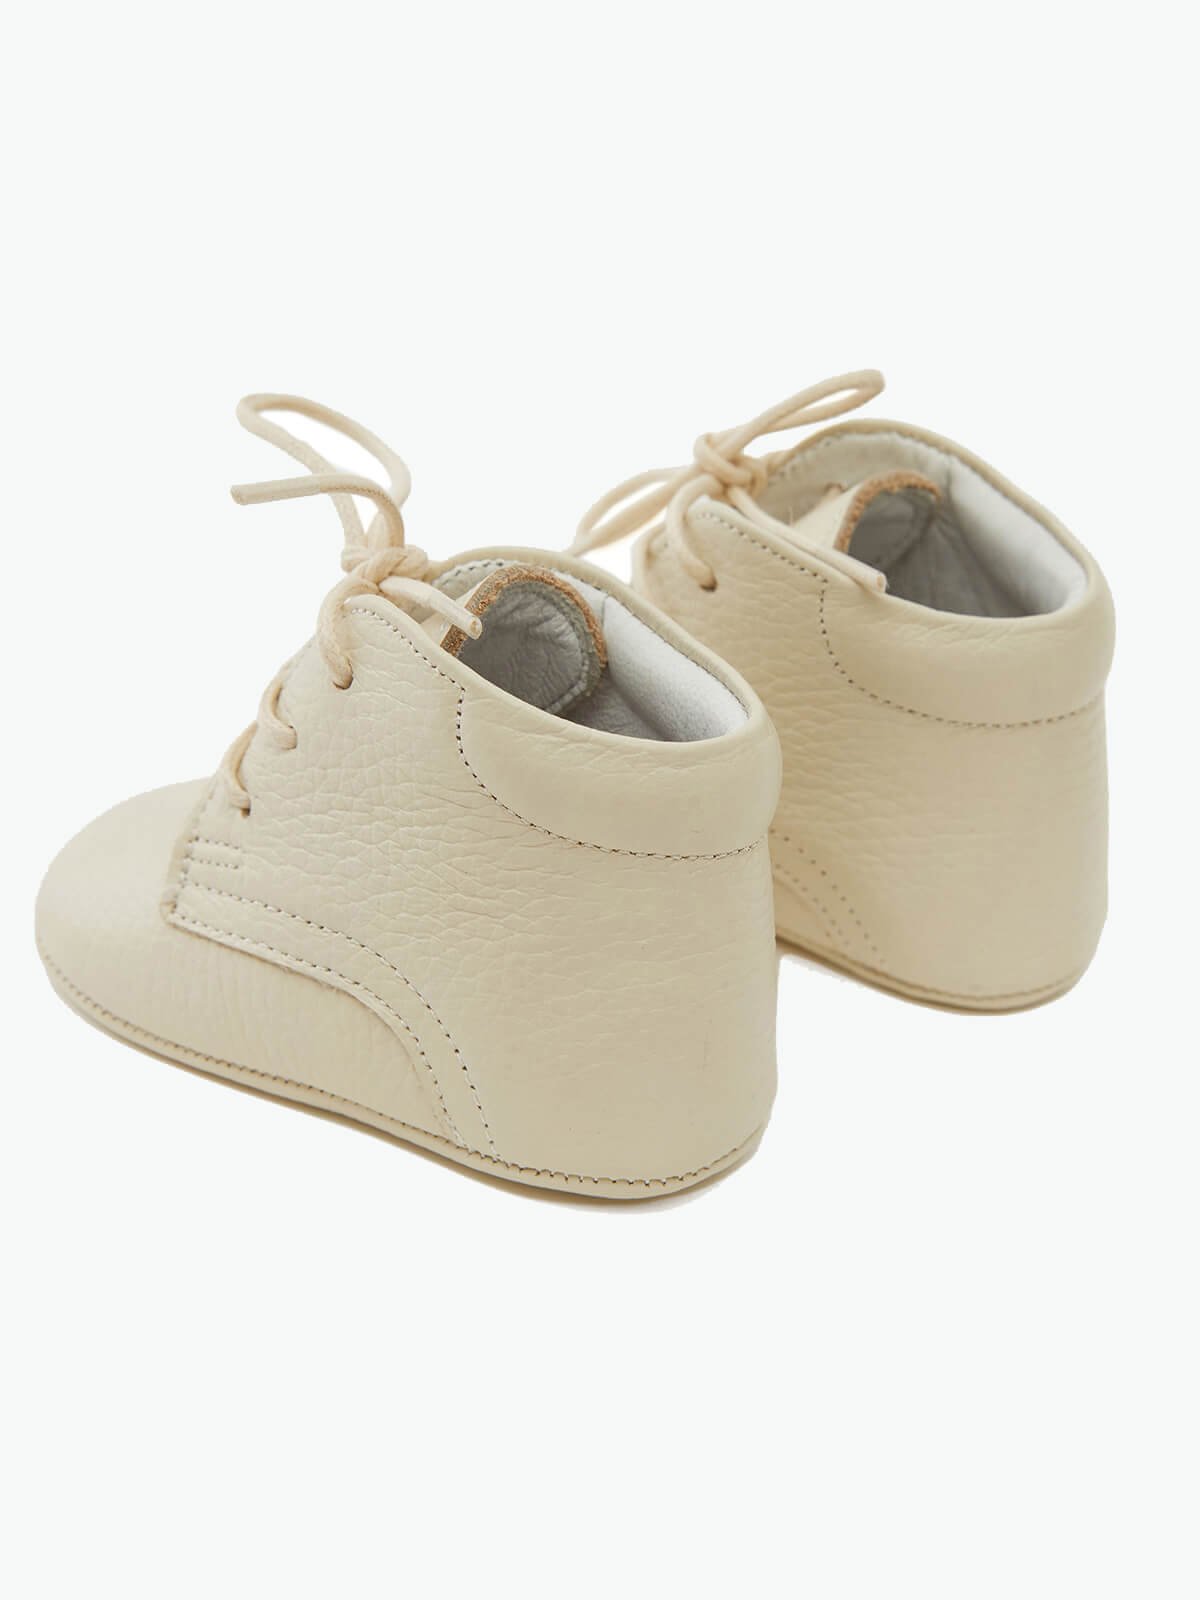 Детские ботинки на шнуровке из натуральной кожи кремового цвета